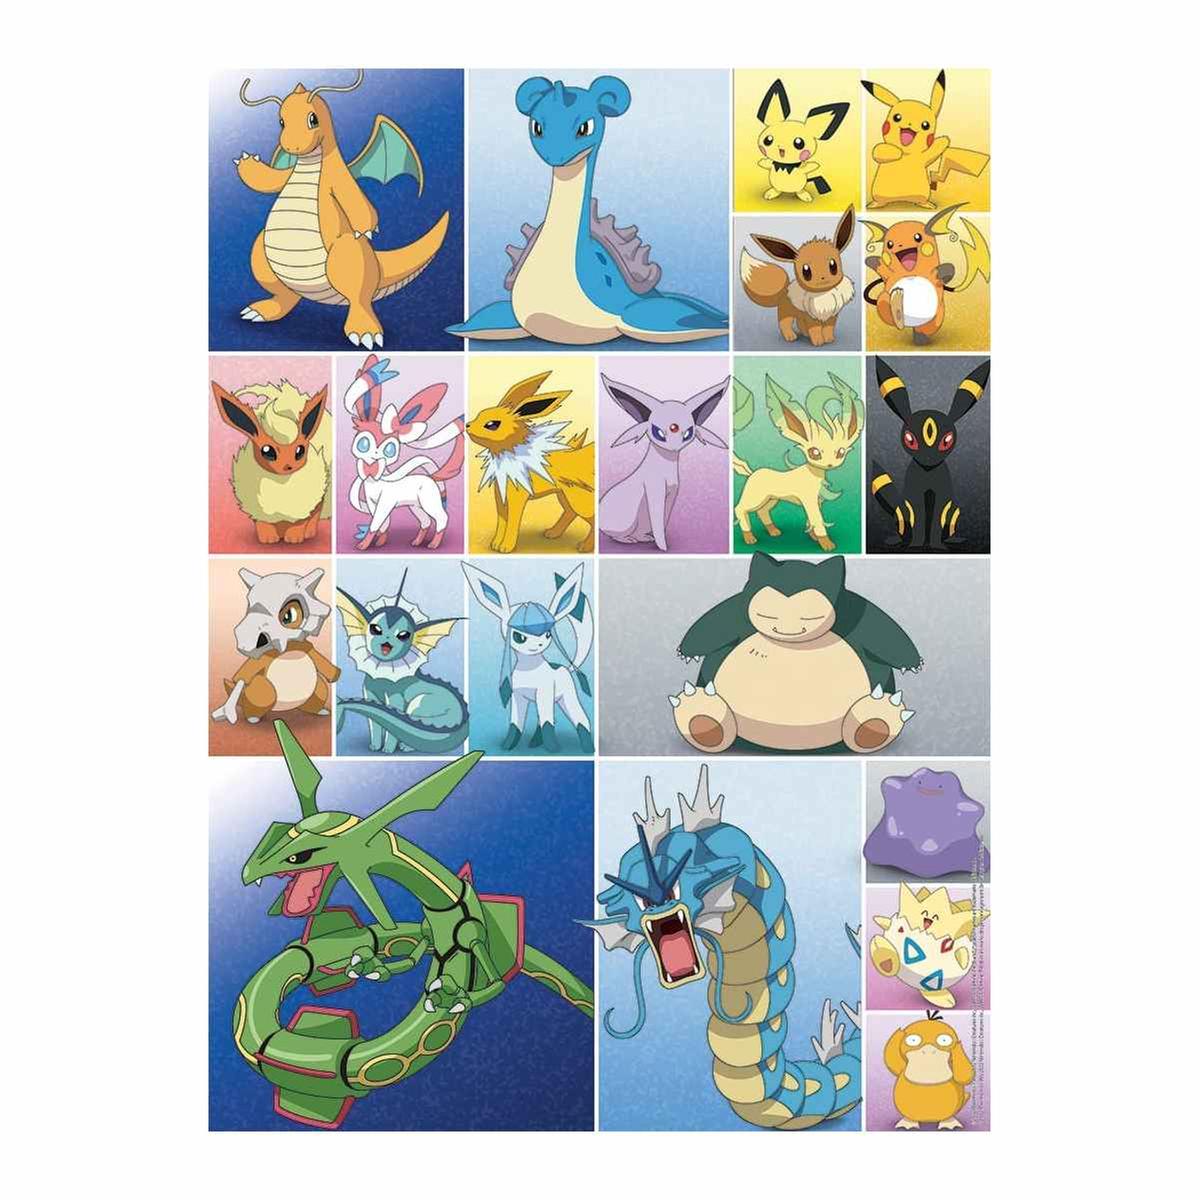 Comprar Puzzle Ravensburger Pokémon de 500 piezas 120011316